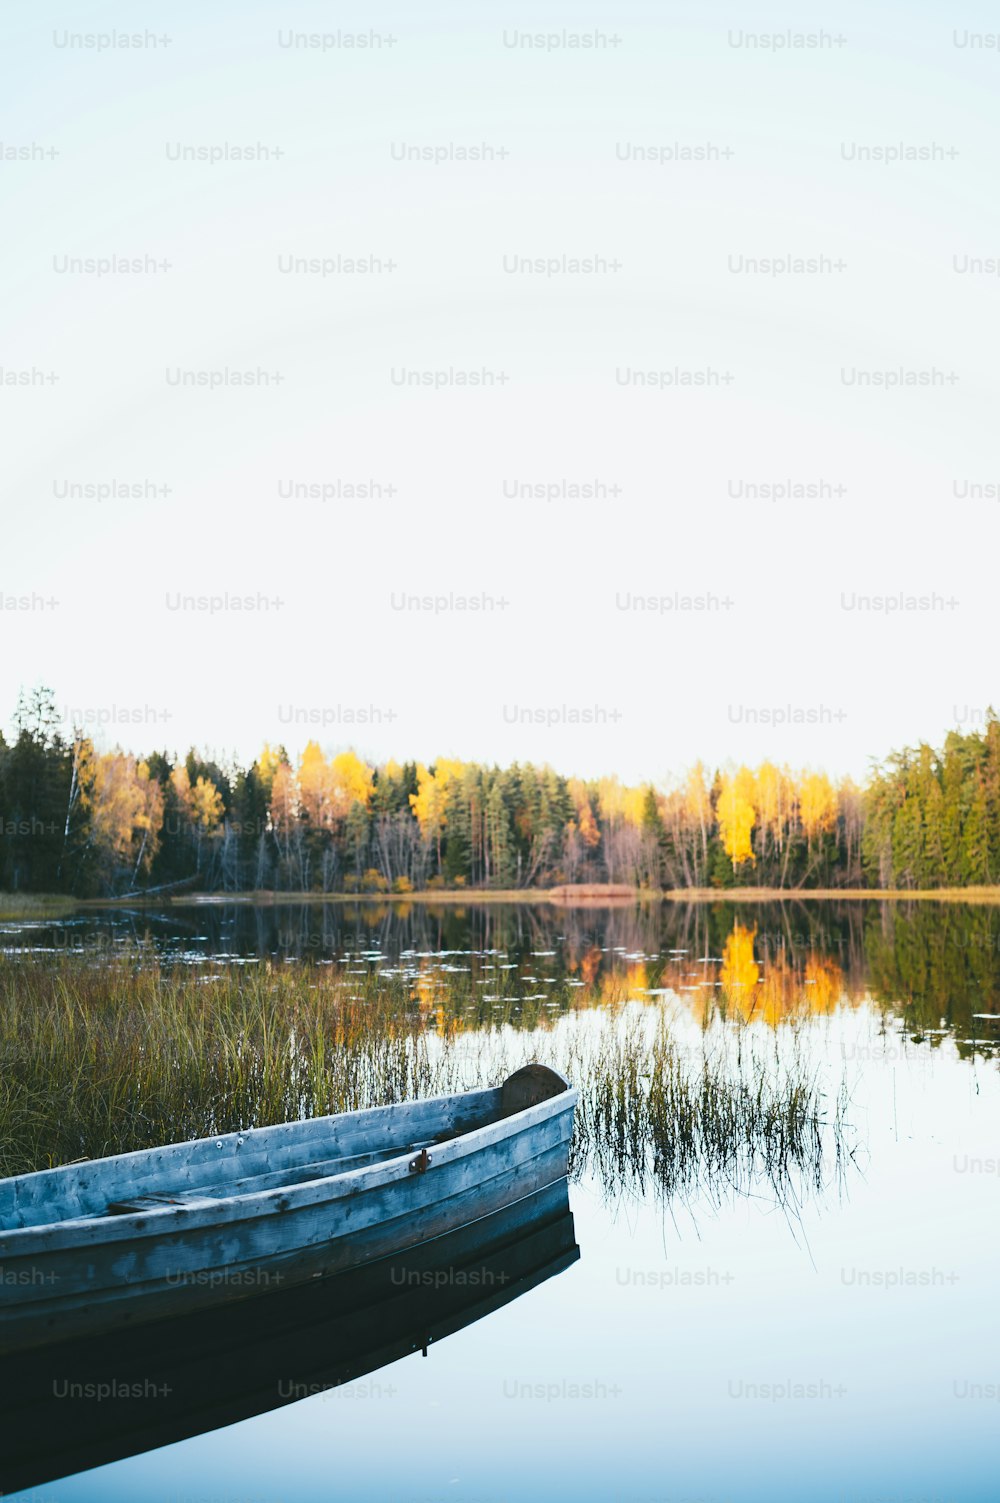 숲 옆 호수 위에 앉아 있는 보트